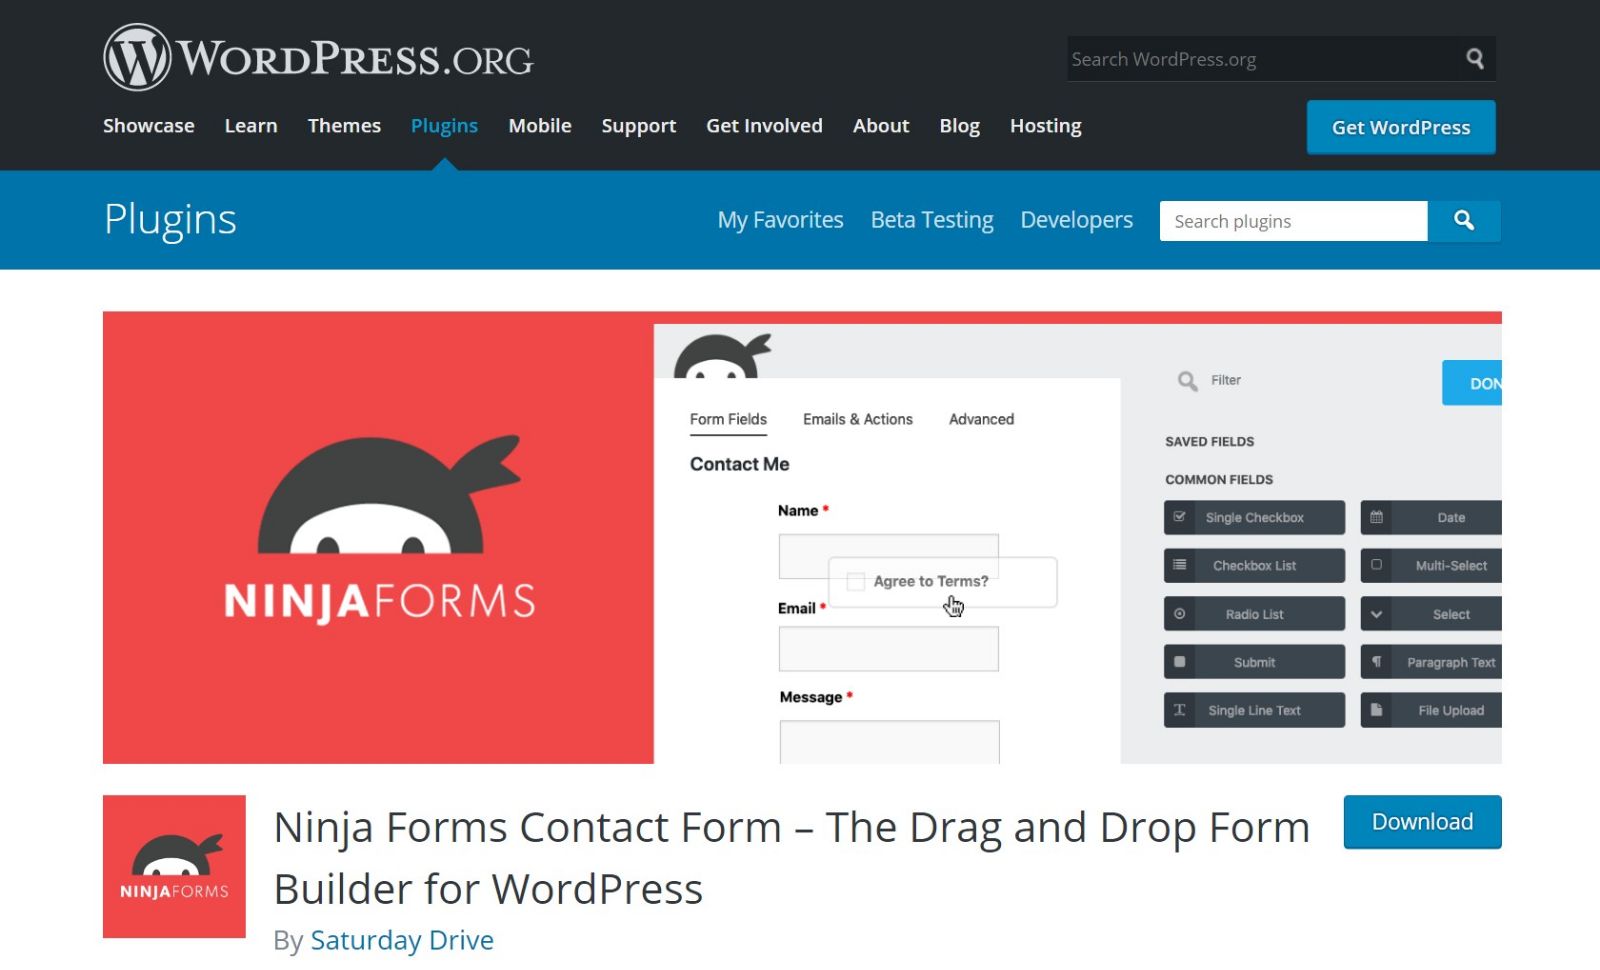 表单生成插件 Ninja Forms 严重漏洞，WordPress 官方强制推送更新